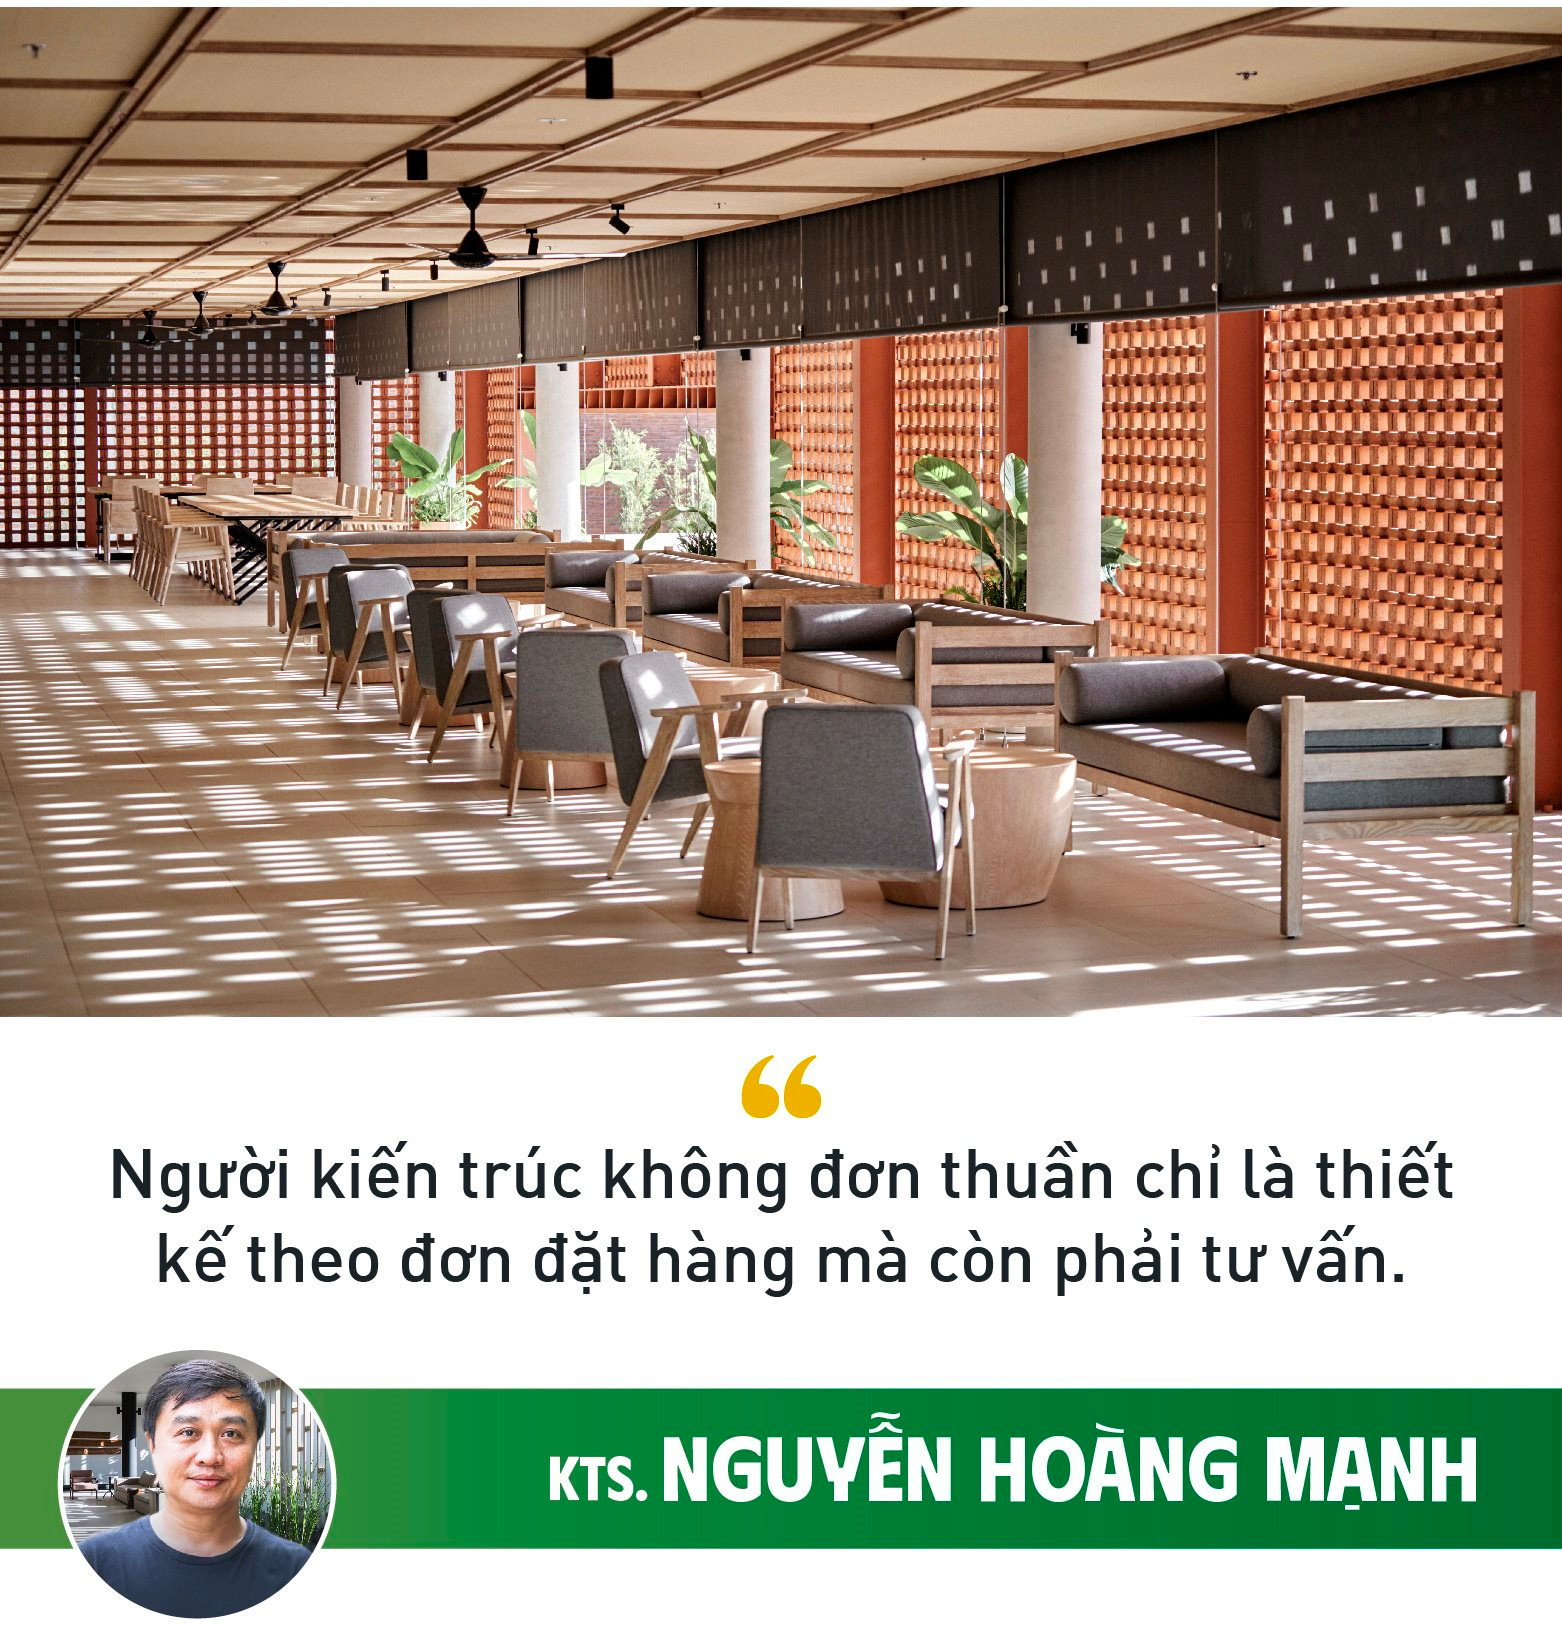 KTS. Nguyễn Hoàng Mạnh: "Khi thiết kế không nghĩ tới giải thưởng, lợi nhuận cũng không còn quá quan trọng" - Ảnh 7.